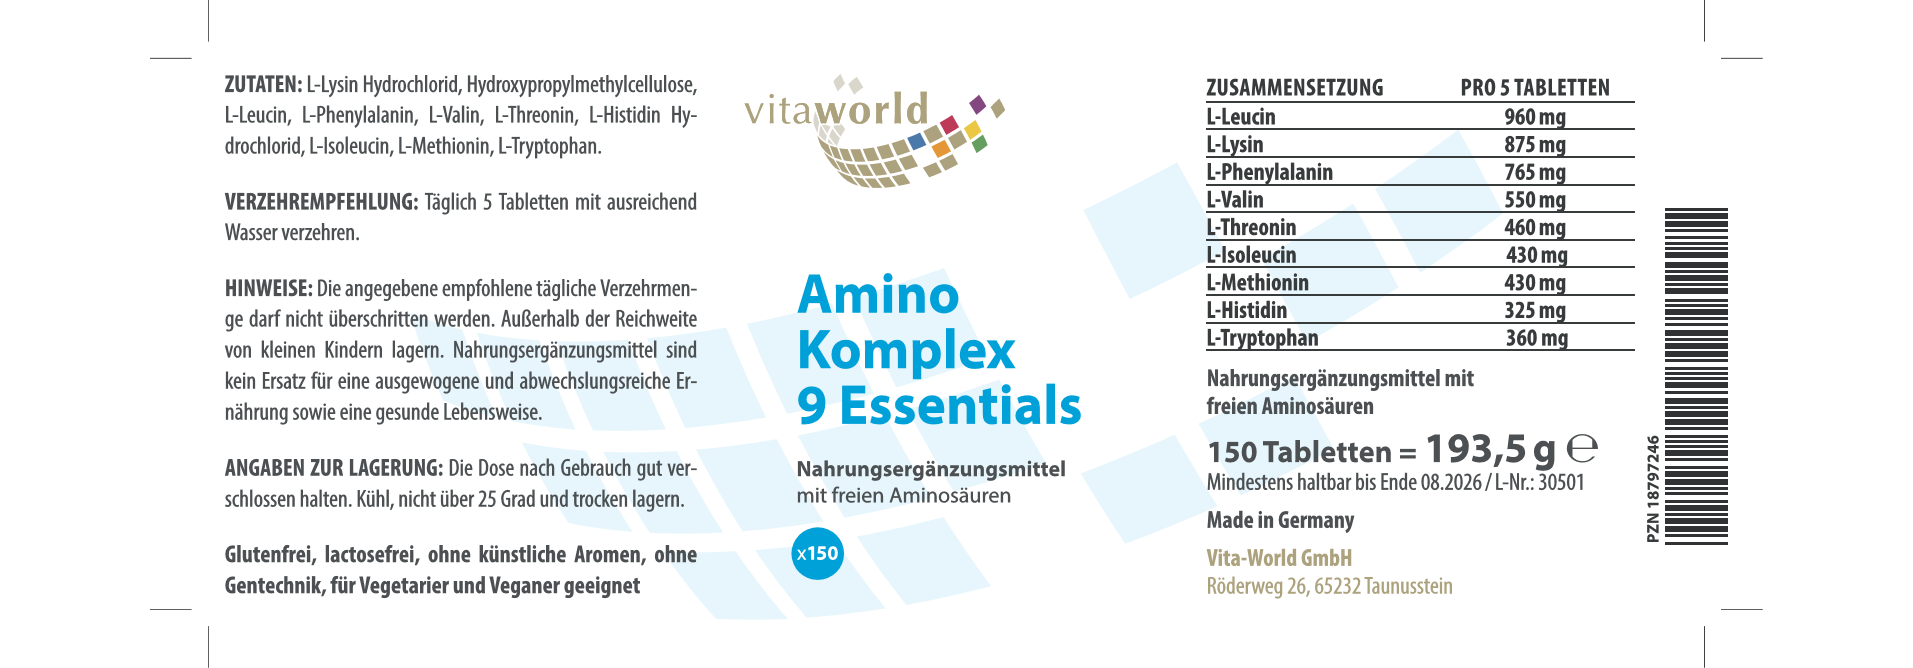 Amino Komplex 9 Essentials (150 Tbl)